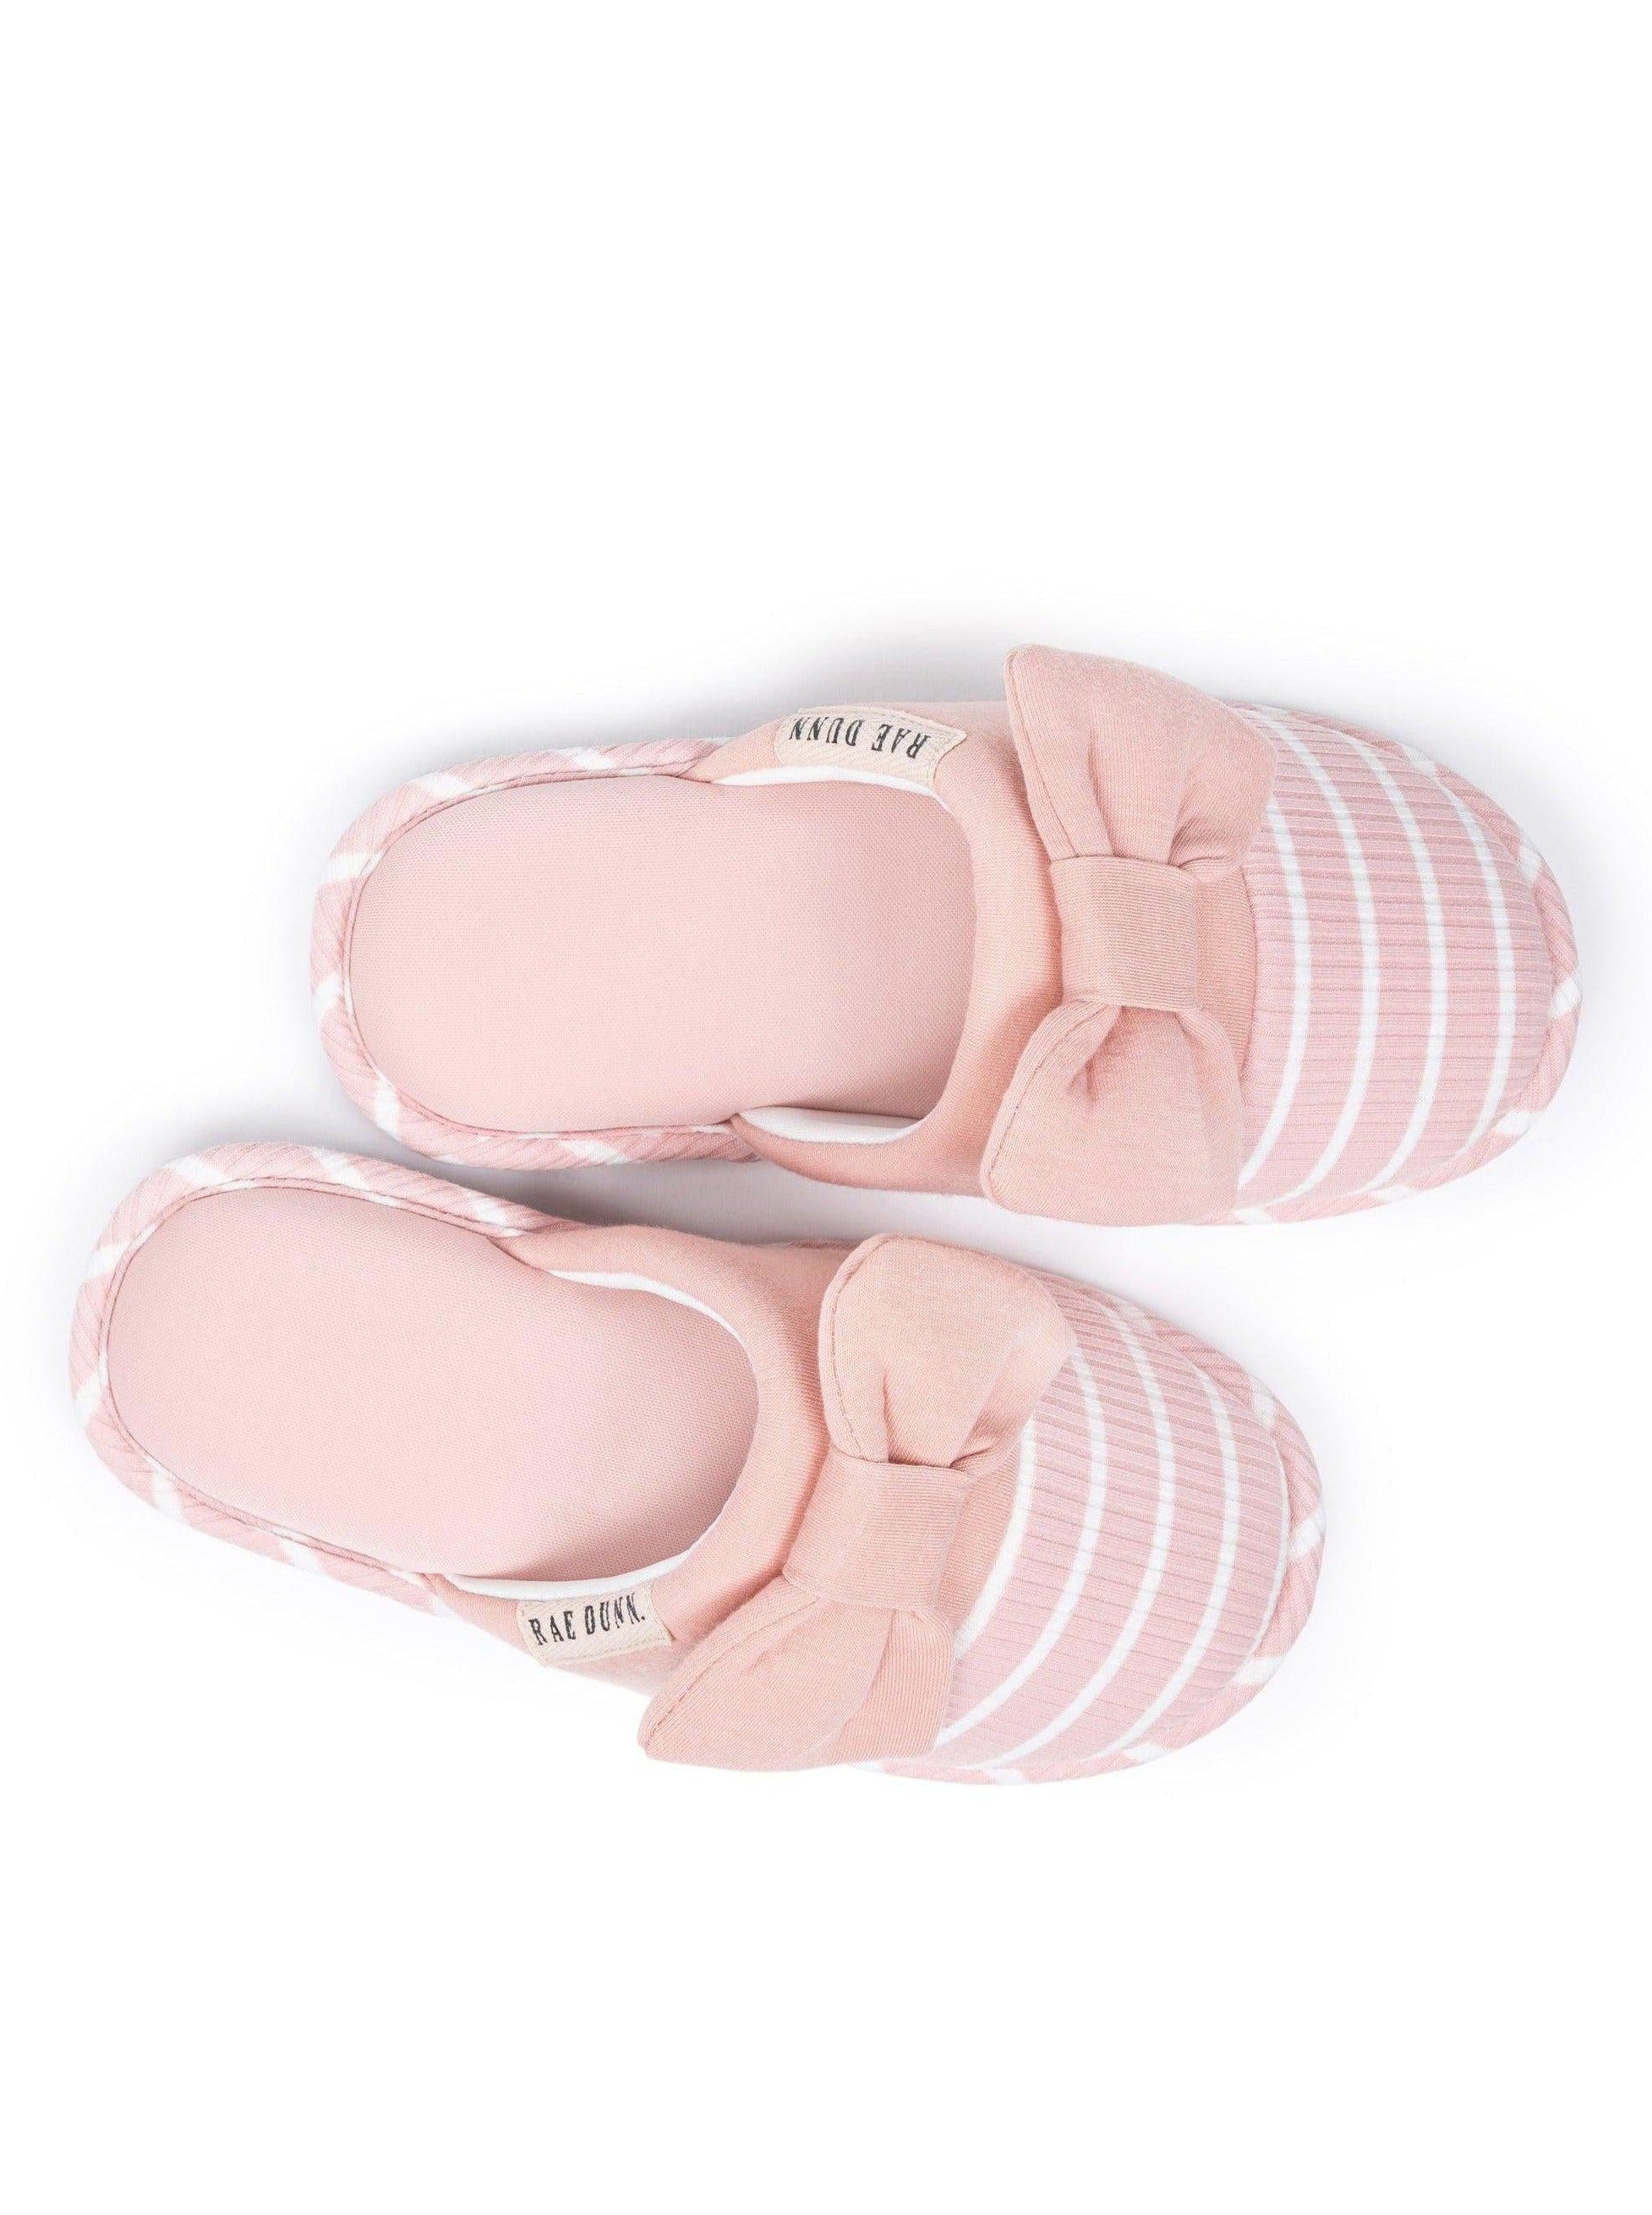 Women's Pink Stripe Bow Slippers - Rae Dunn Wear